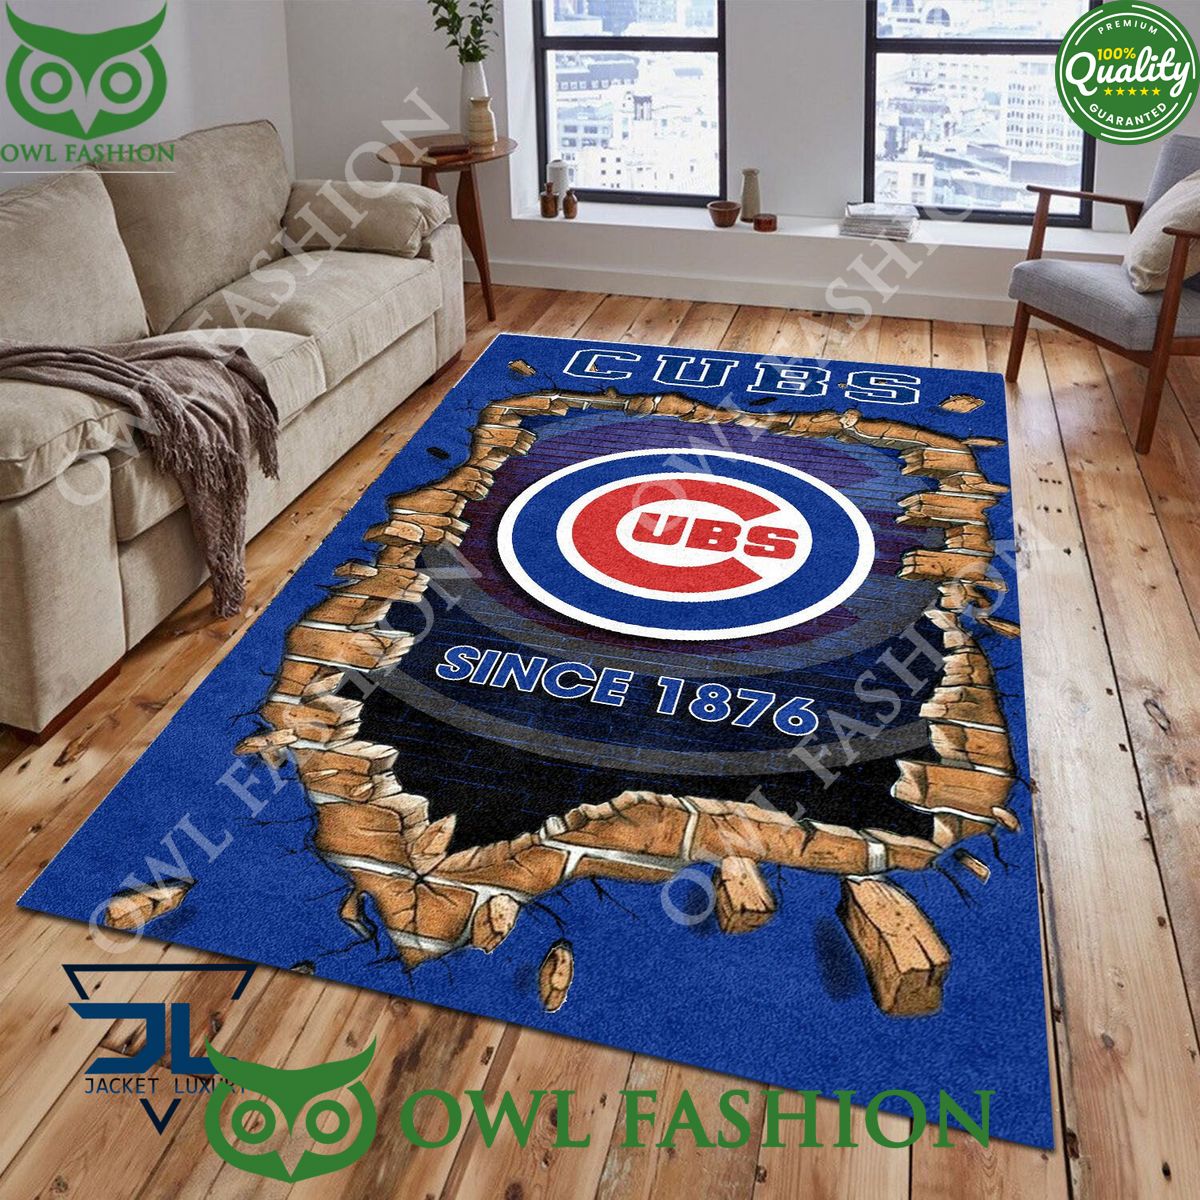 Broken Wall Chicago Cubs MLB Baseball Team Rug Carpet Living Room